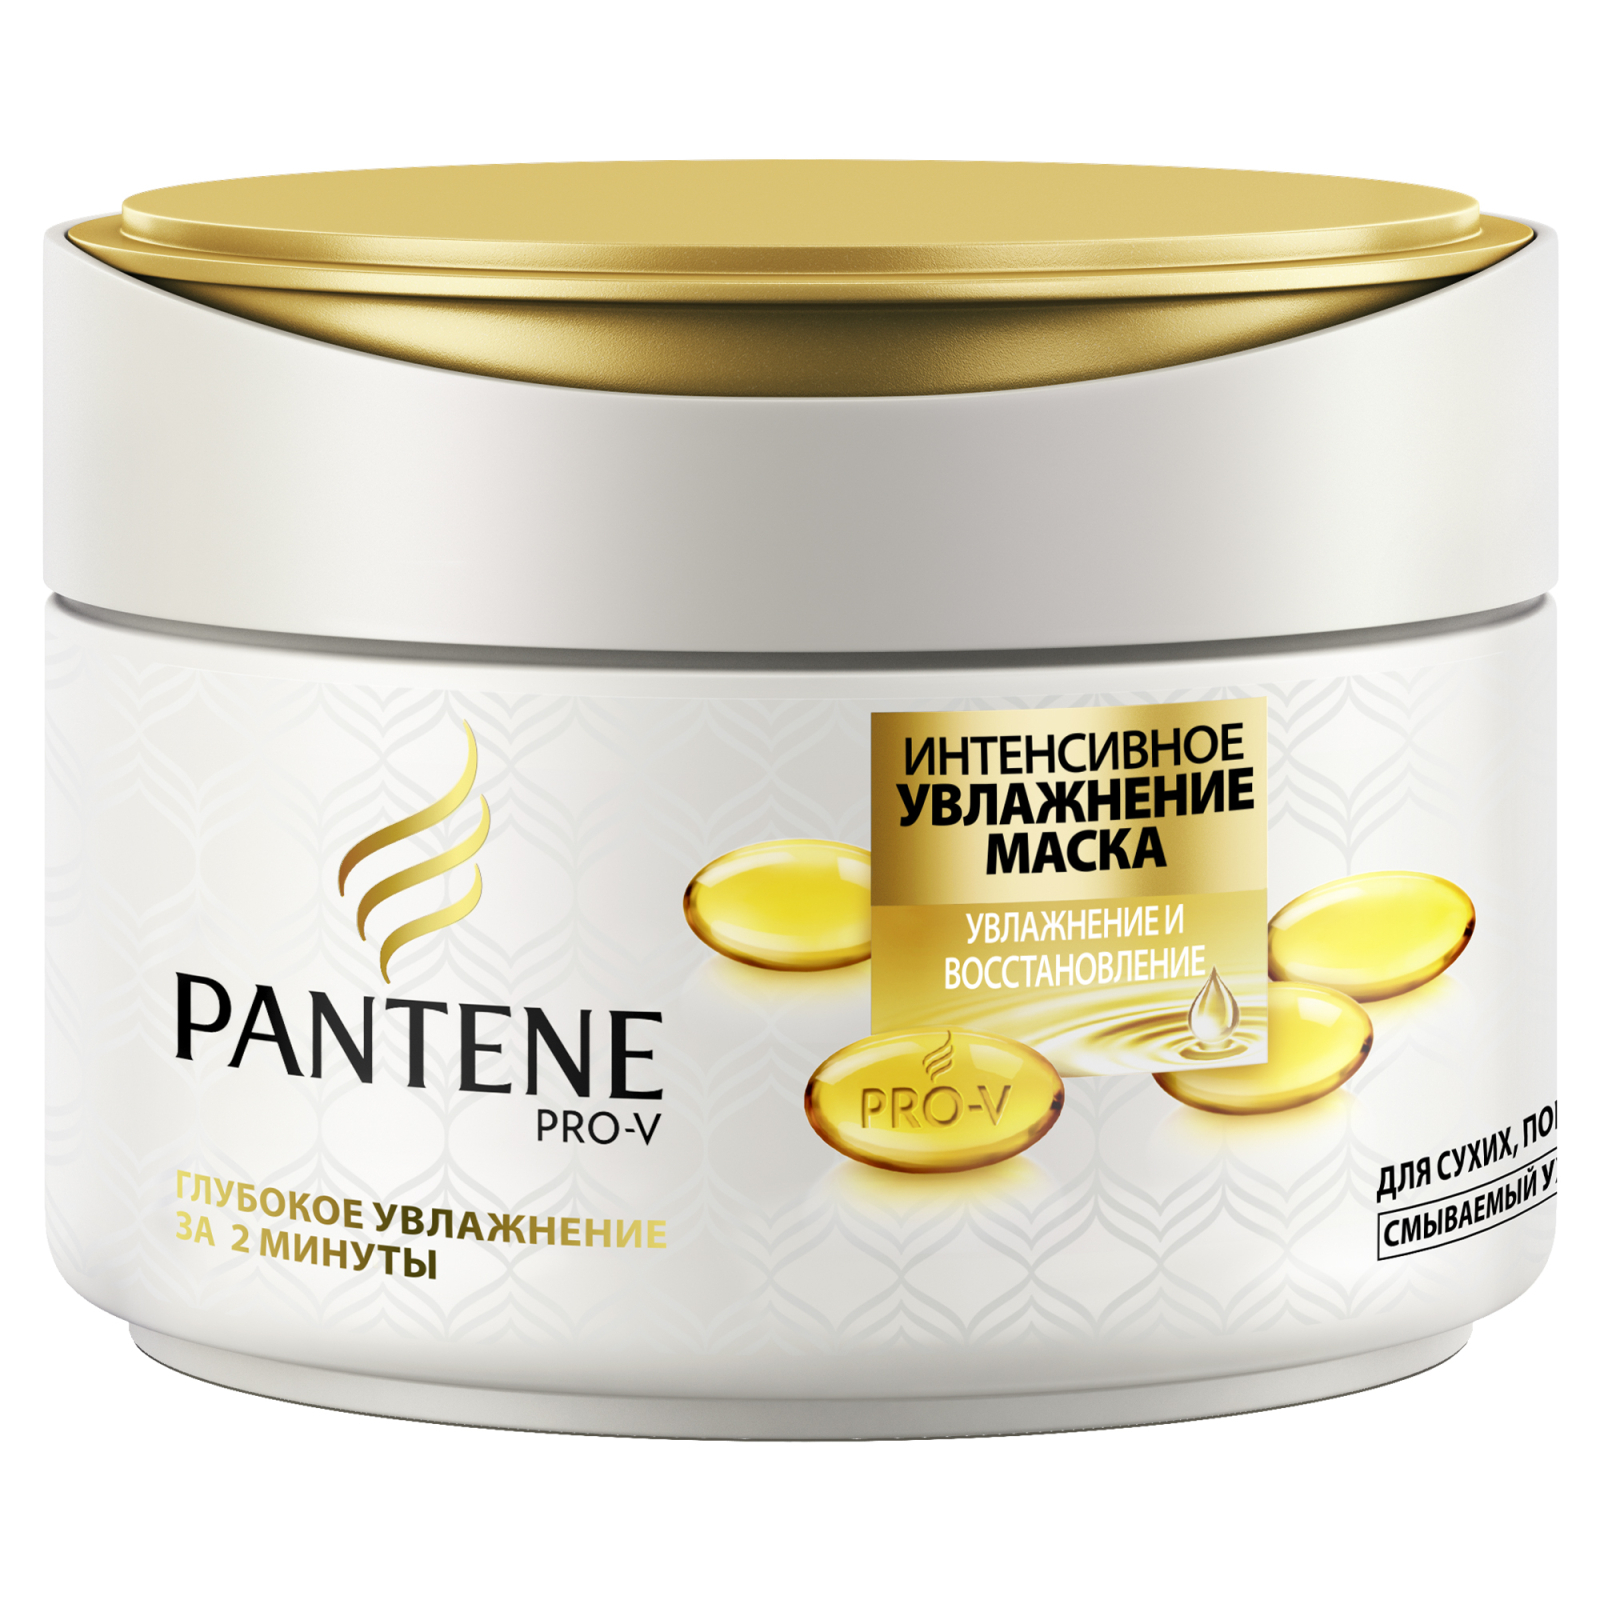 Маска для волосся Pantene Увлажнение и востановление 200 мл (4015600297657)